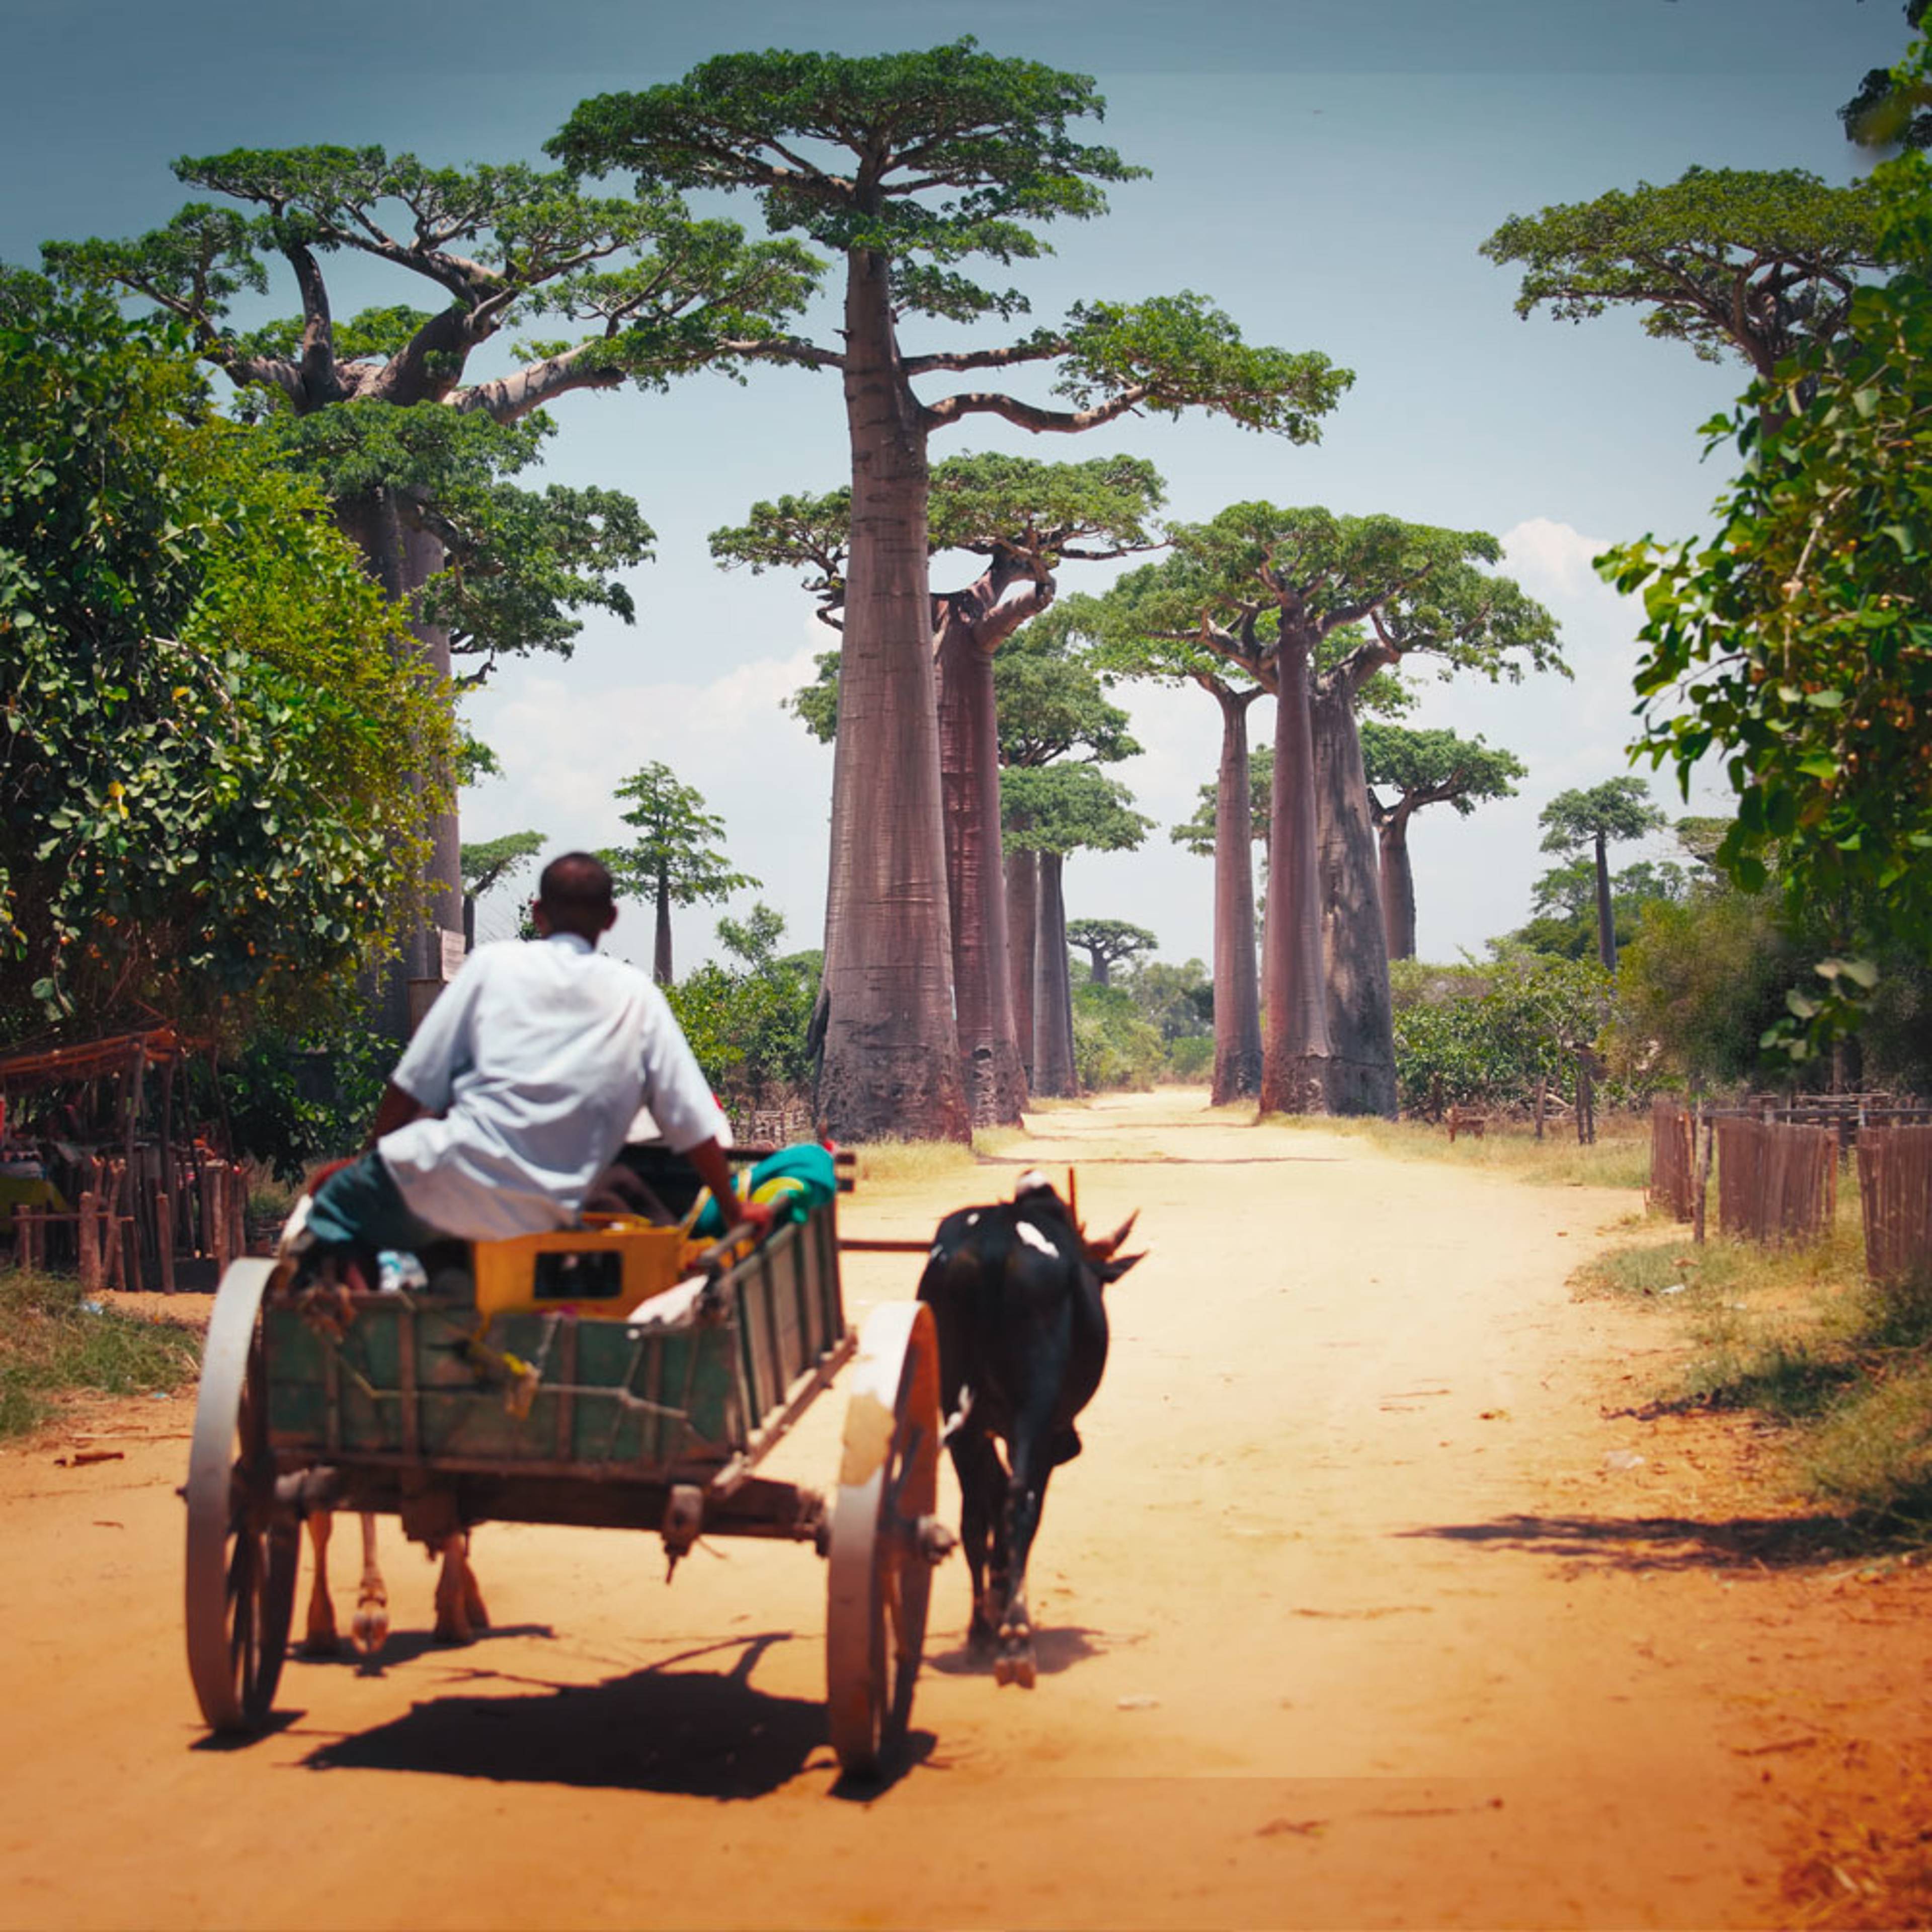 Il tuo viaggio nella Natura in Madagascar su misura